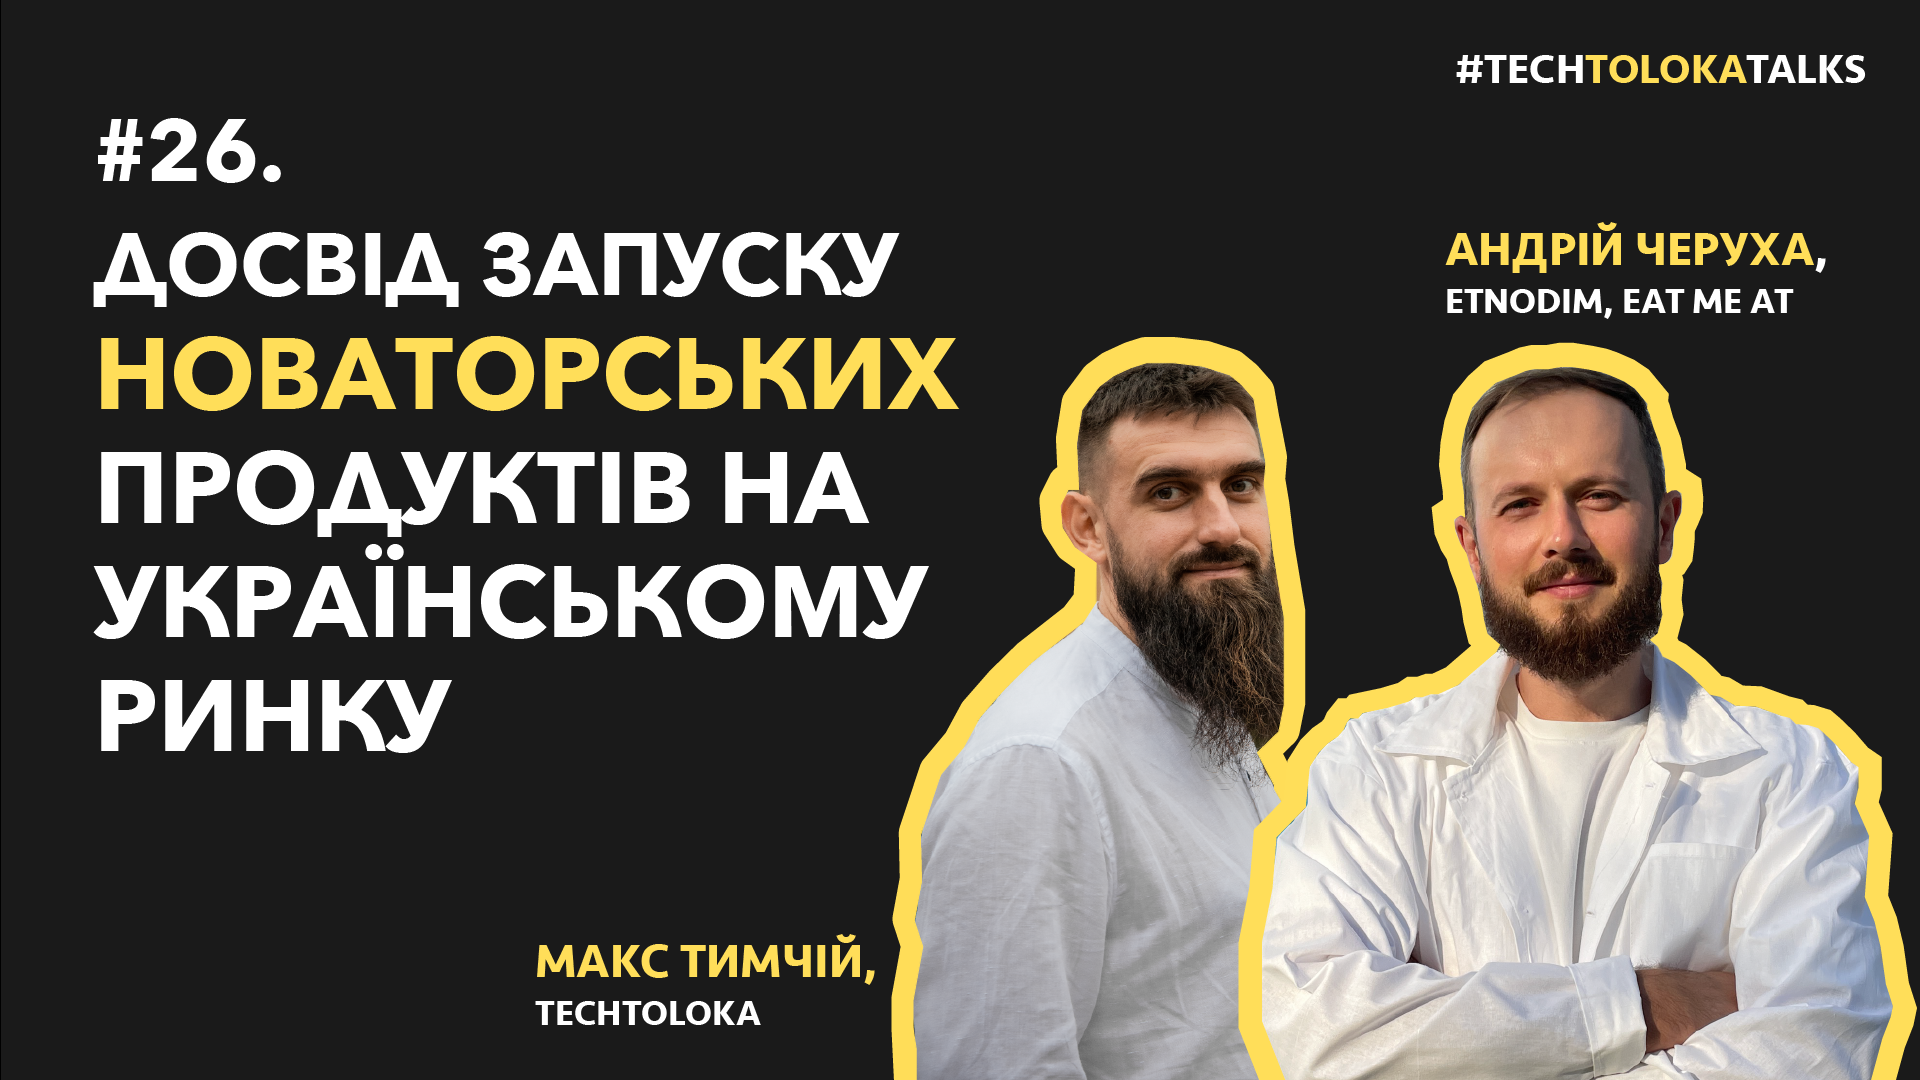 TechTolokaTalks #26. Досвід запуску новаторських продуктів на українському ринку з Андрієм Черухою